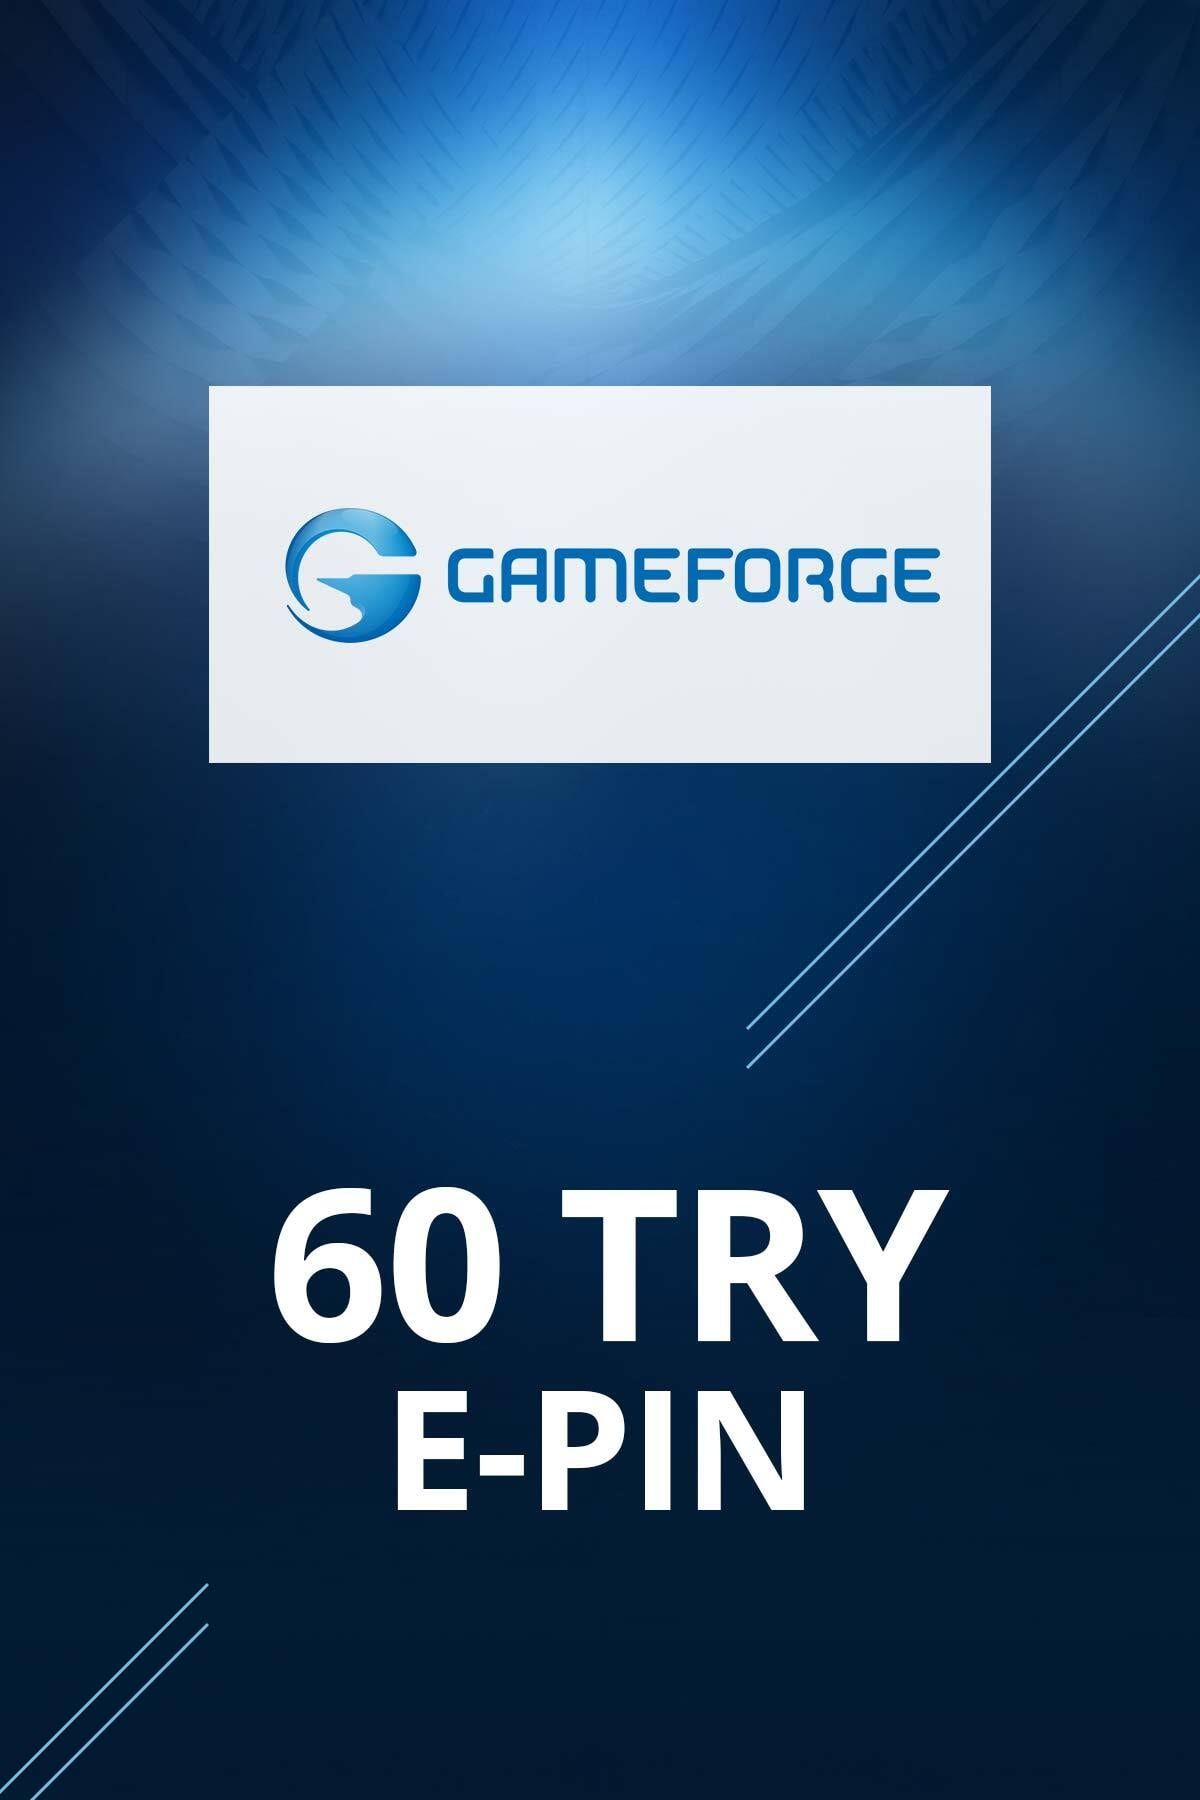 Gameforge 60 TL E-pin